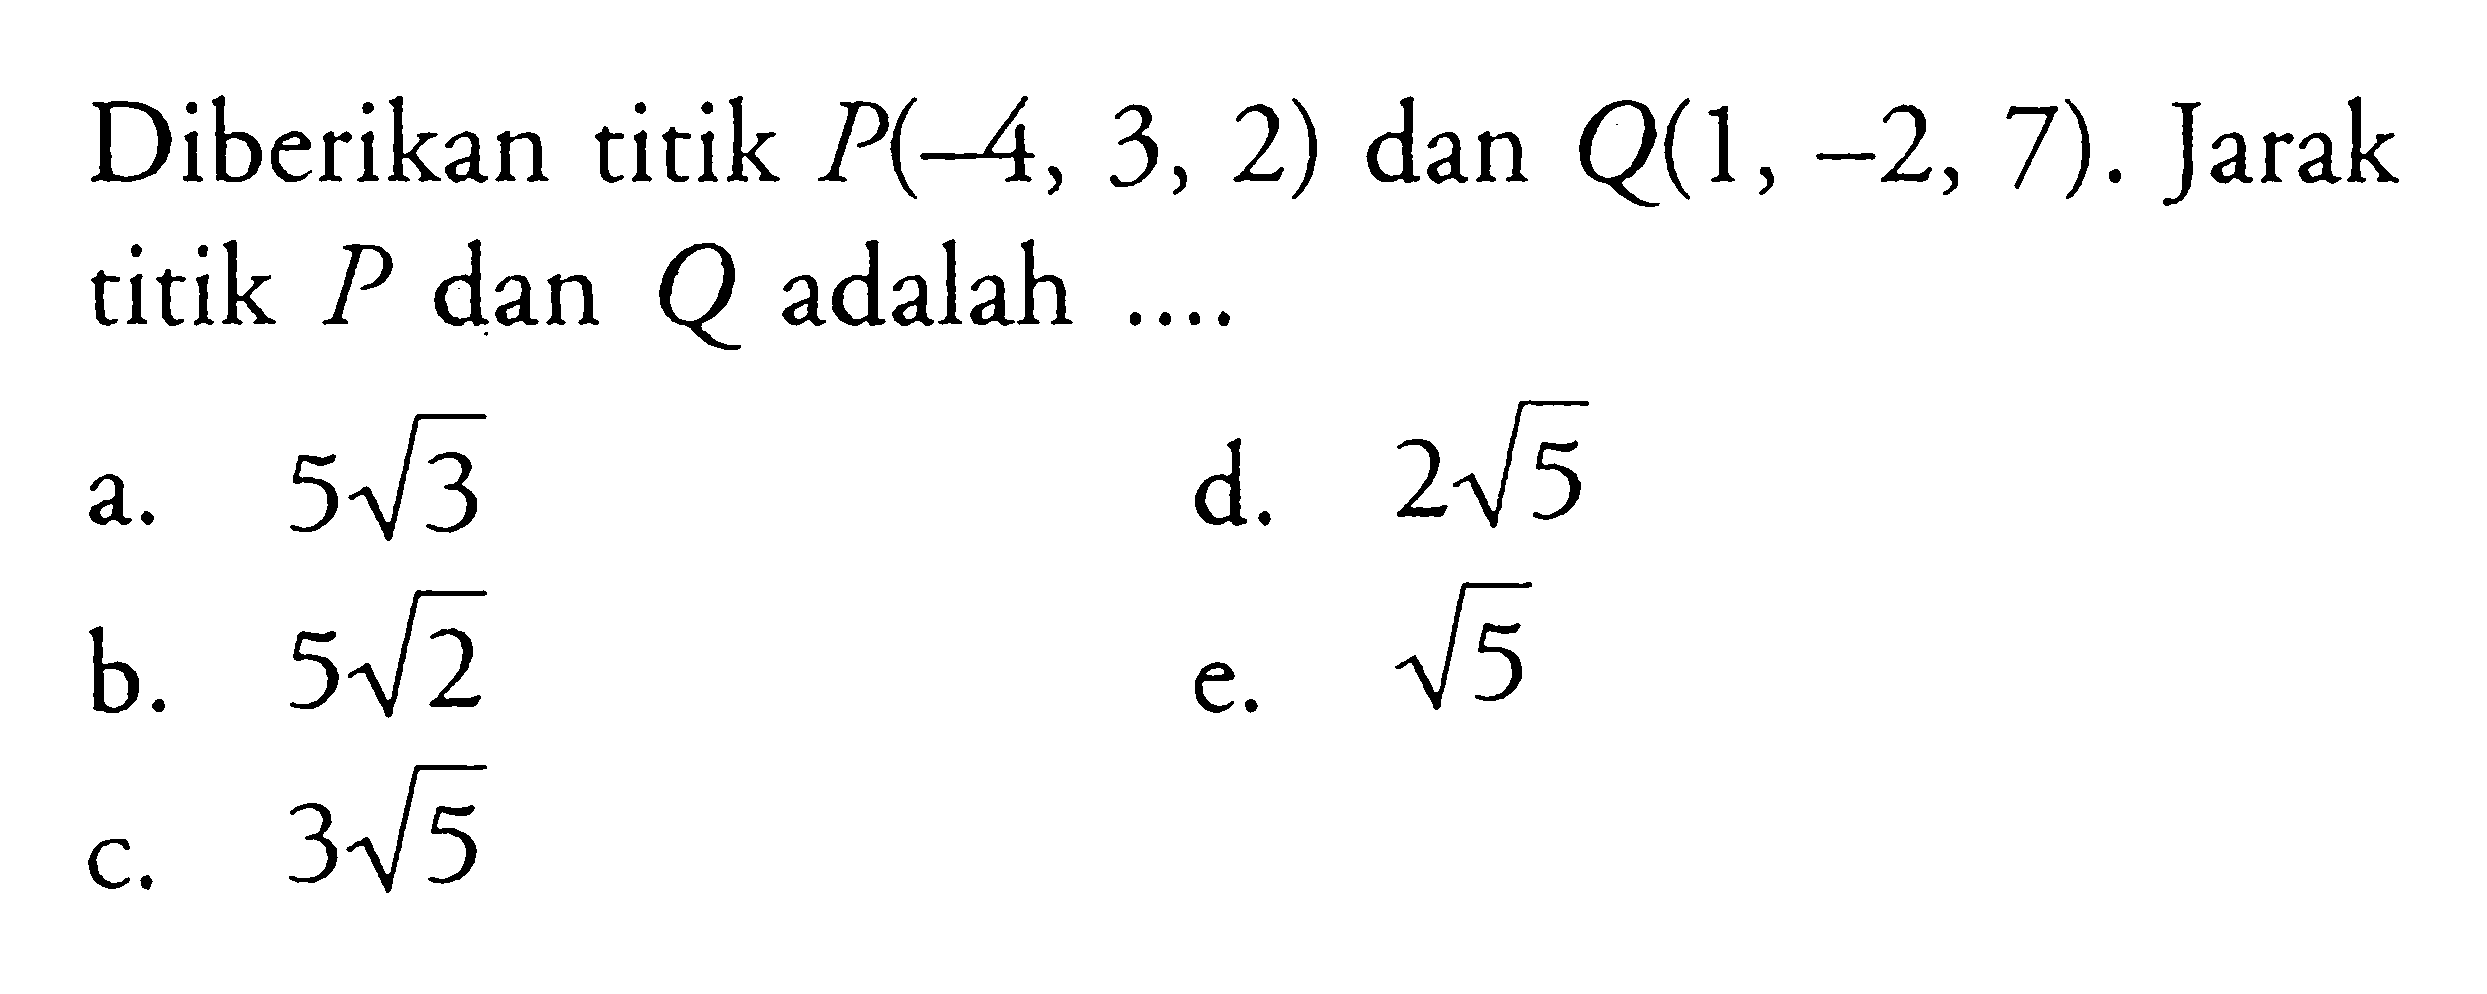 Diberikan titik P(-4, 3, 2) dan Q(1, -2, 7) . Jarak titik P dan Q adalah  ....